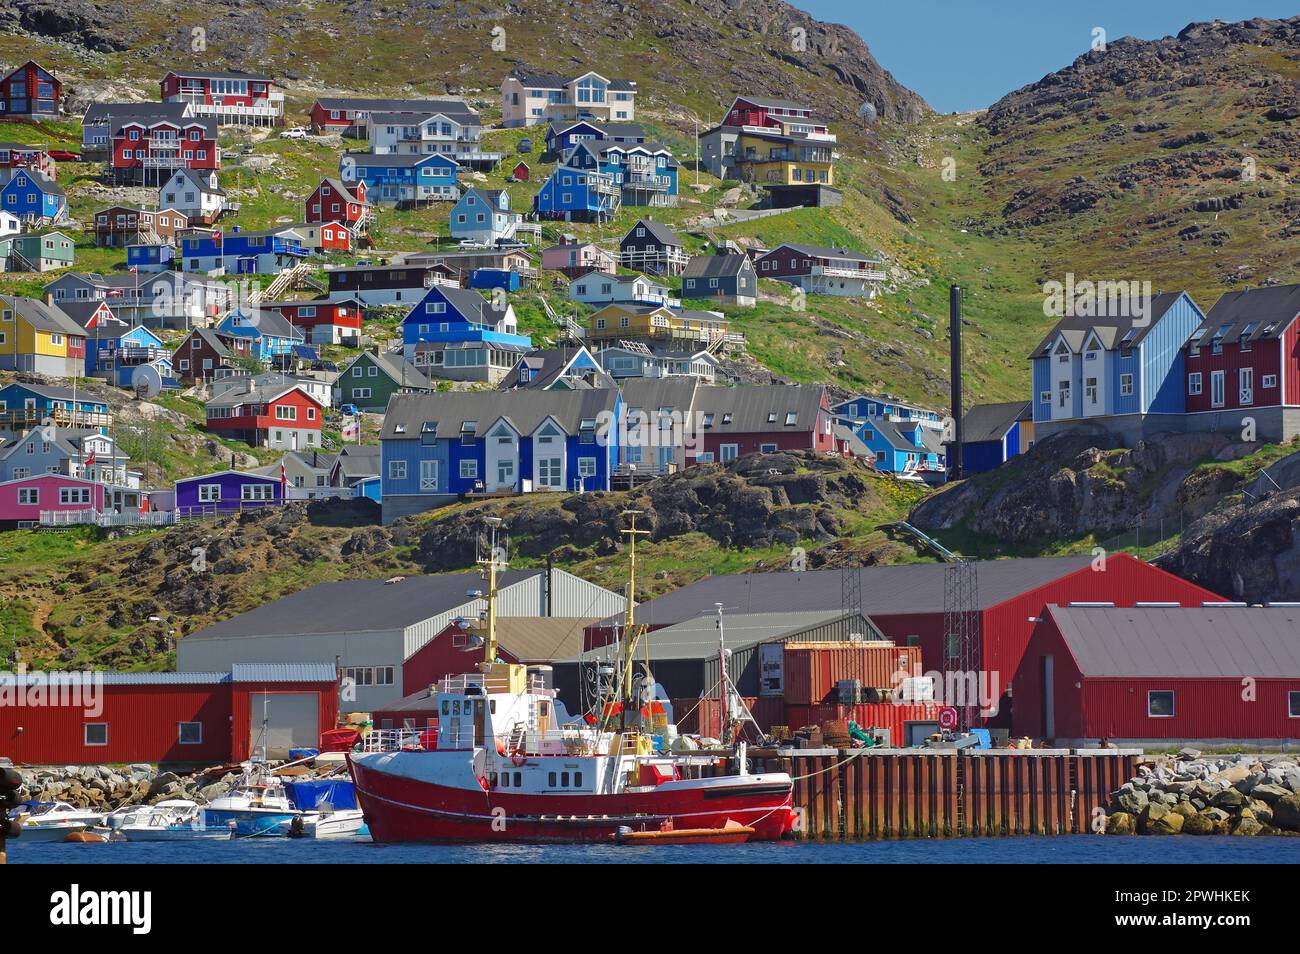 Peschereccio e piccole barche, porto e case colorate, Qaqortoq, comune di Kujalleq, Groenlandia, Danimarca Foto Stock